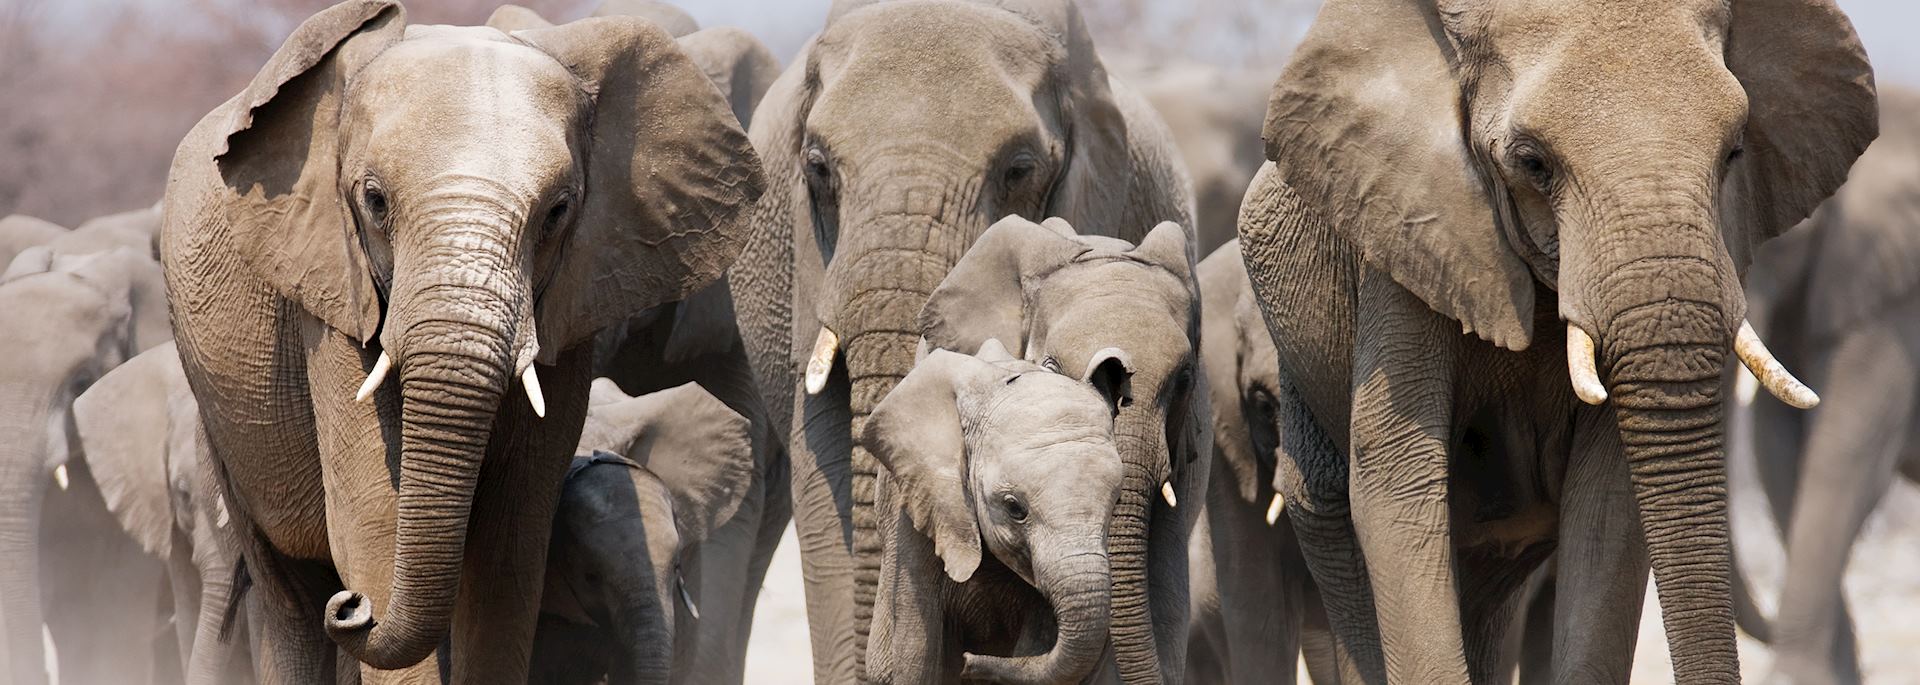 Elephant herd in Etosha